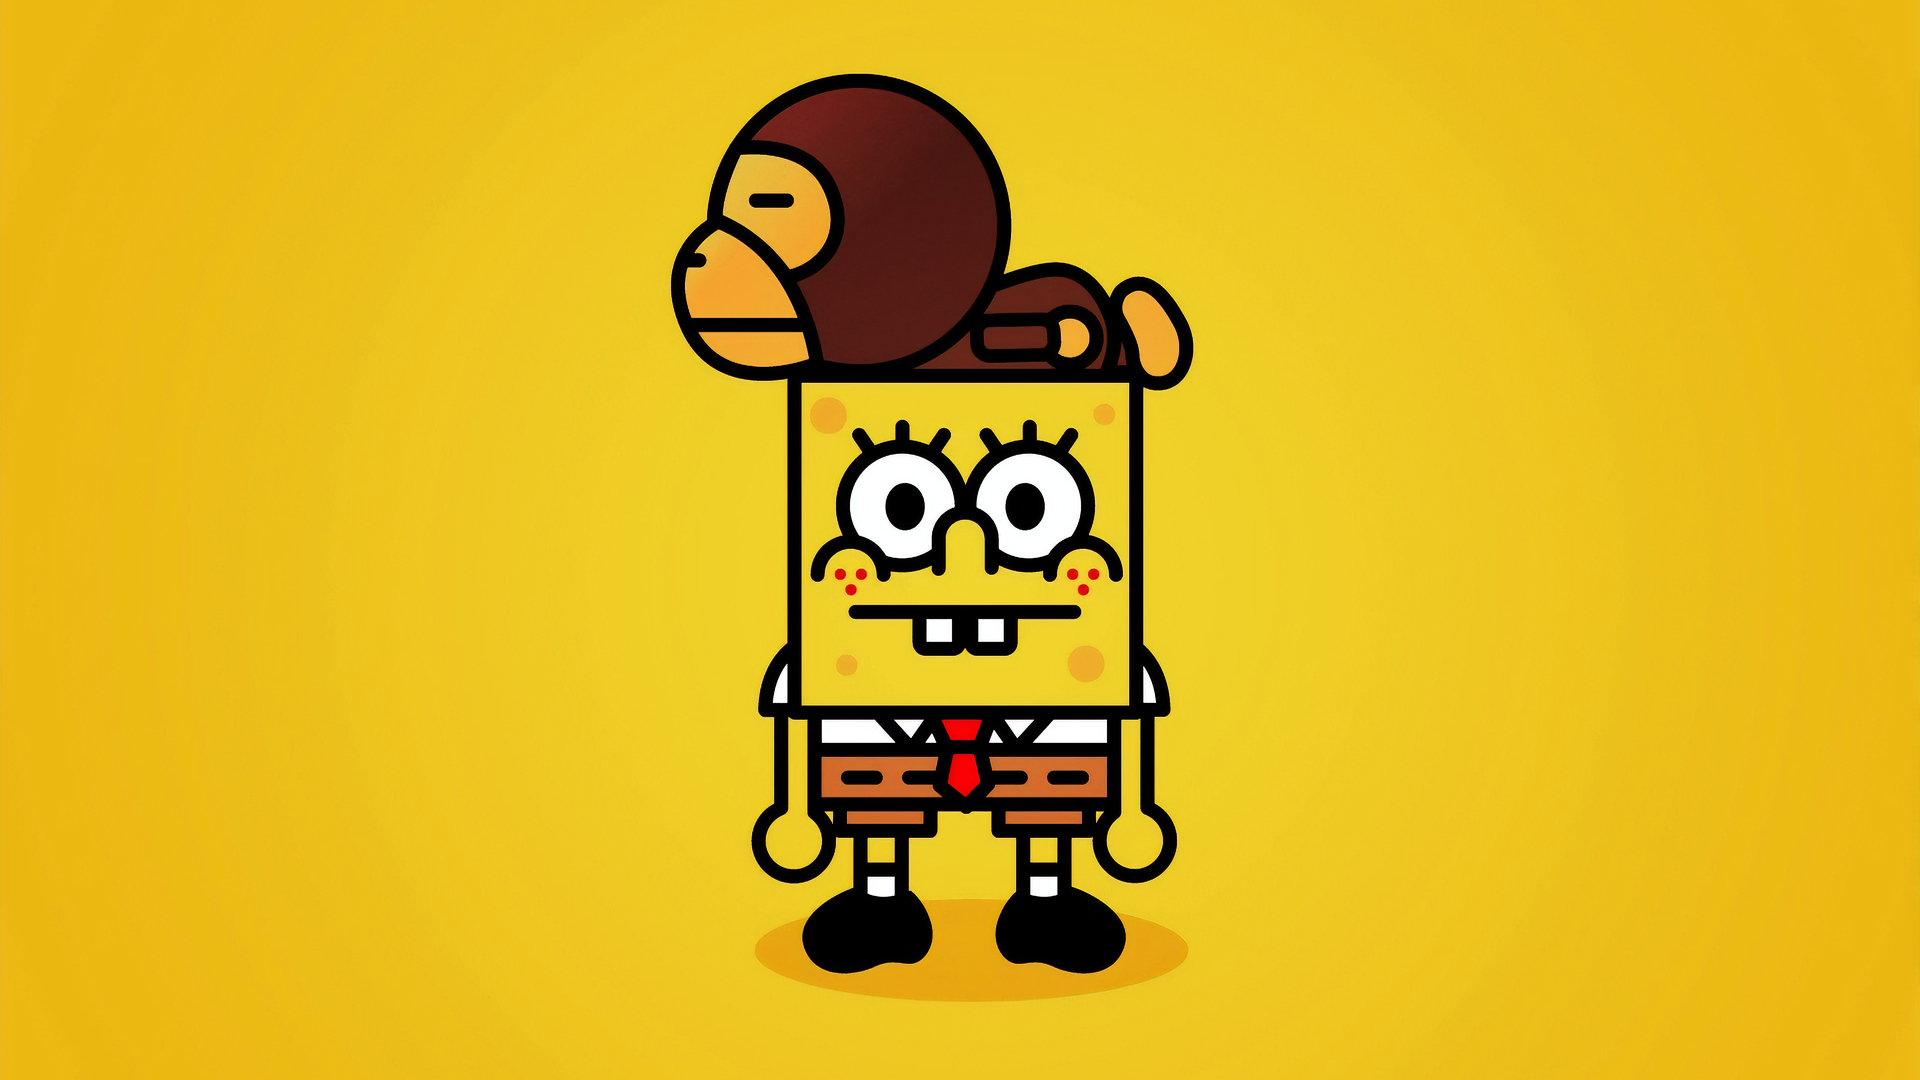 SpongeBob SquarePants - Bạn có yêu thích nhân vật tinh nghịch và đầy sáng tạo này không? Hãy cùng đón xem hình ảnh về SpongeBob SquarePants và khám phá thế giới đầy màu sắc và hài hước của nhân vật này.